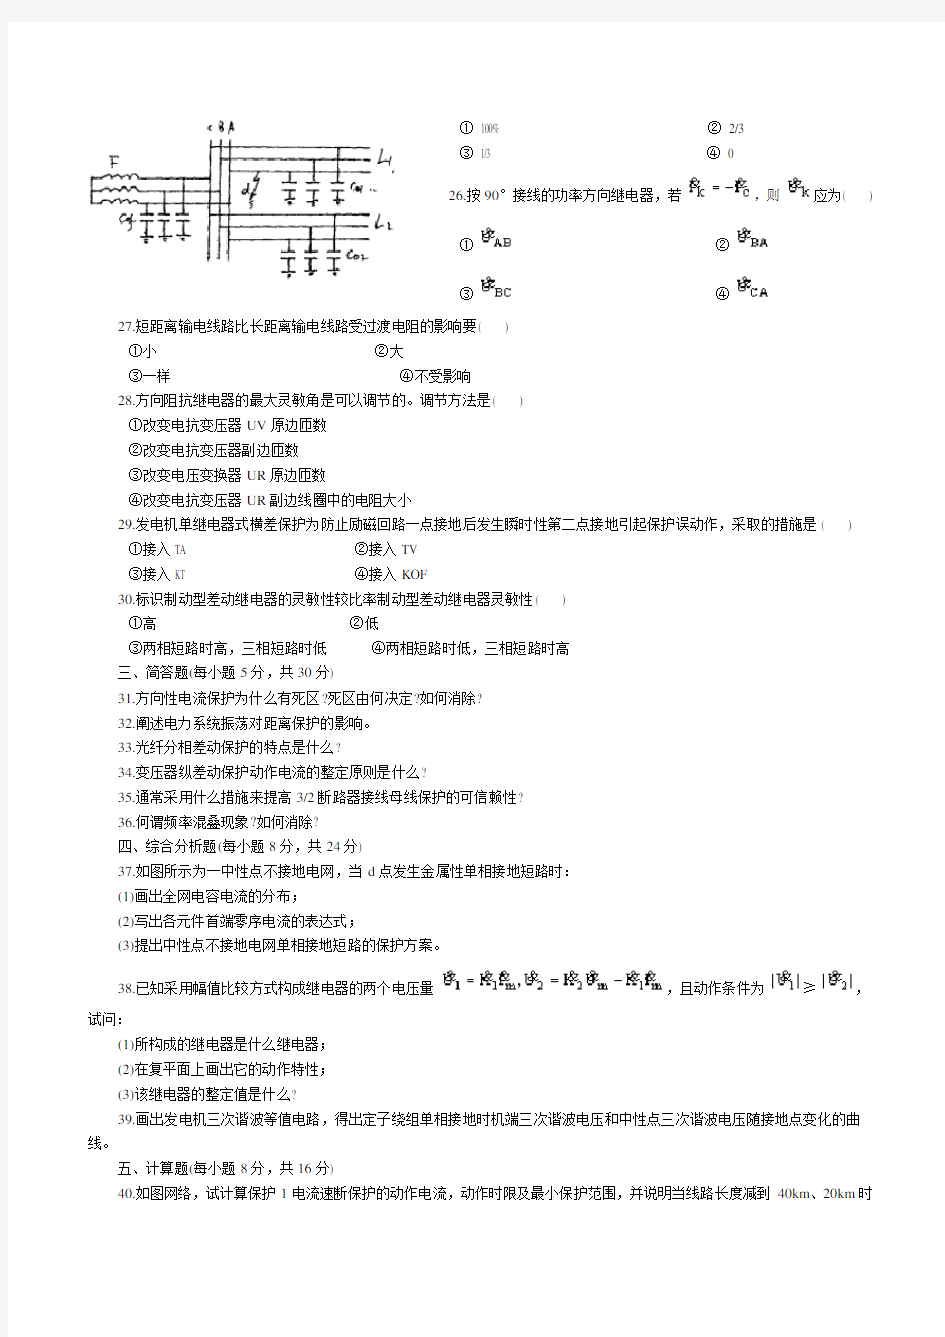 中国电网考试电力系统继电保护试题-答案_(第二版)_张保会_尹项根主编